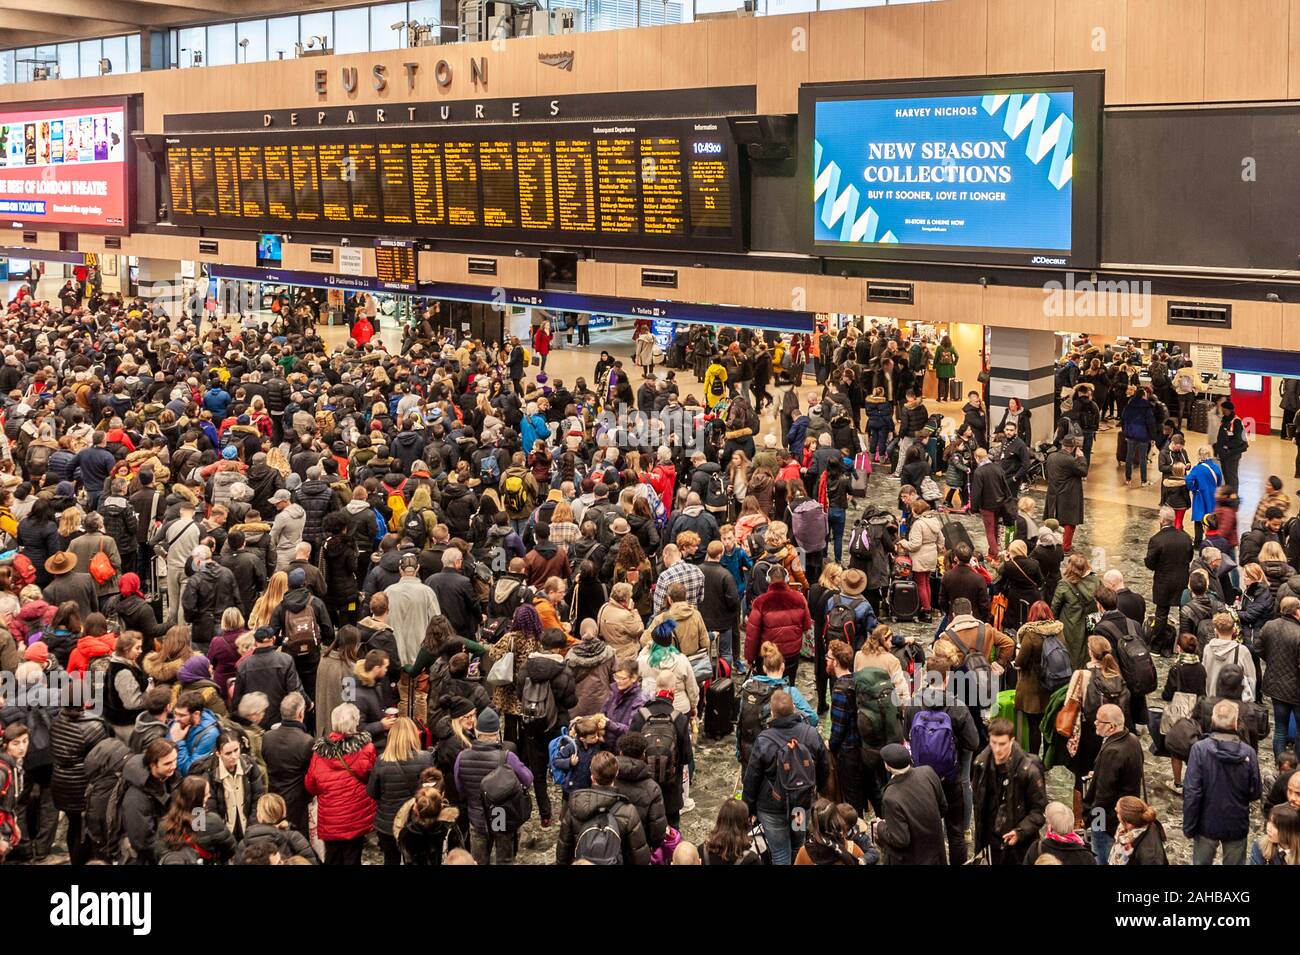 Grandes multitudes en la explanada de la estación de ferrocarril London Euston mirando la salida juntas. Londres, Inglaterra. Foto de stock